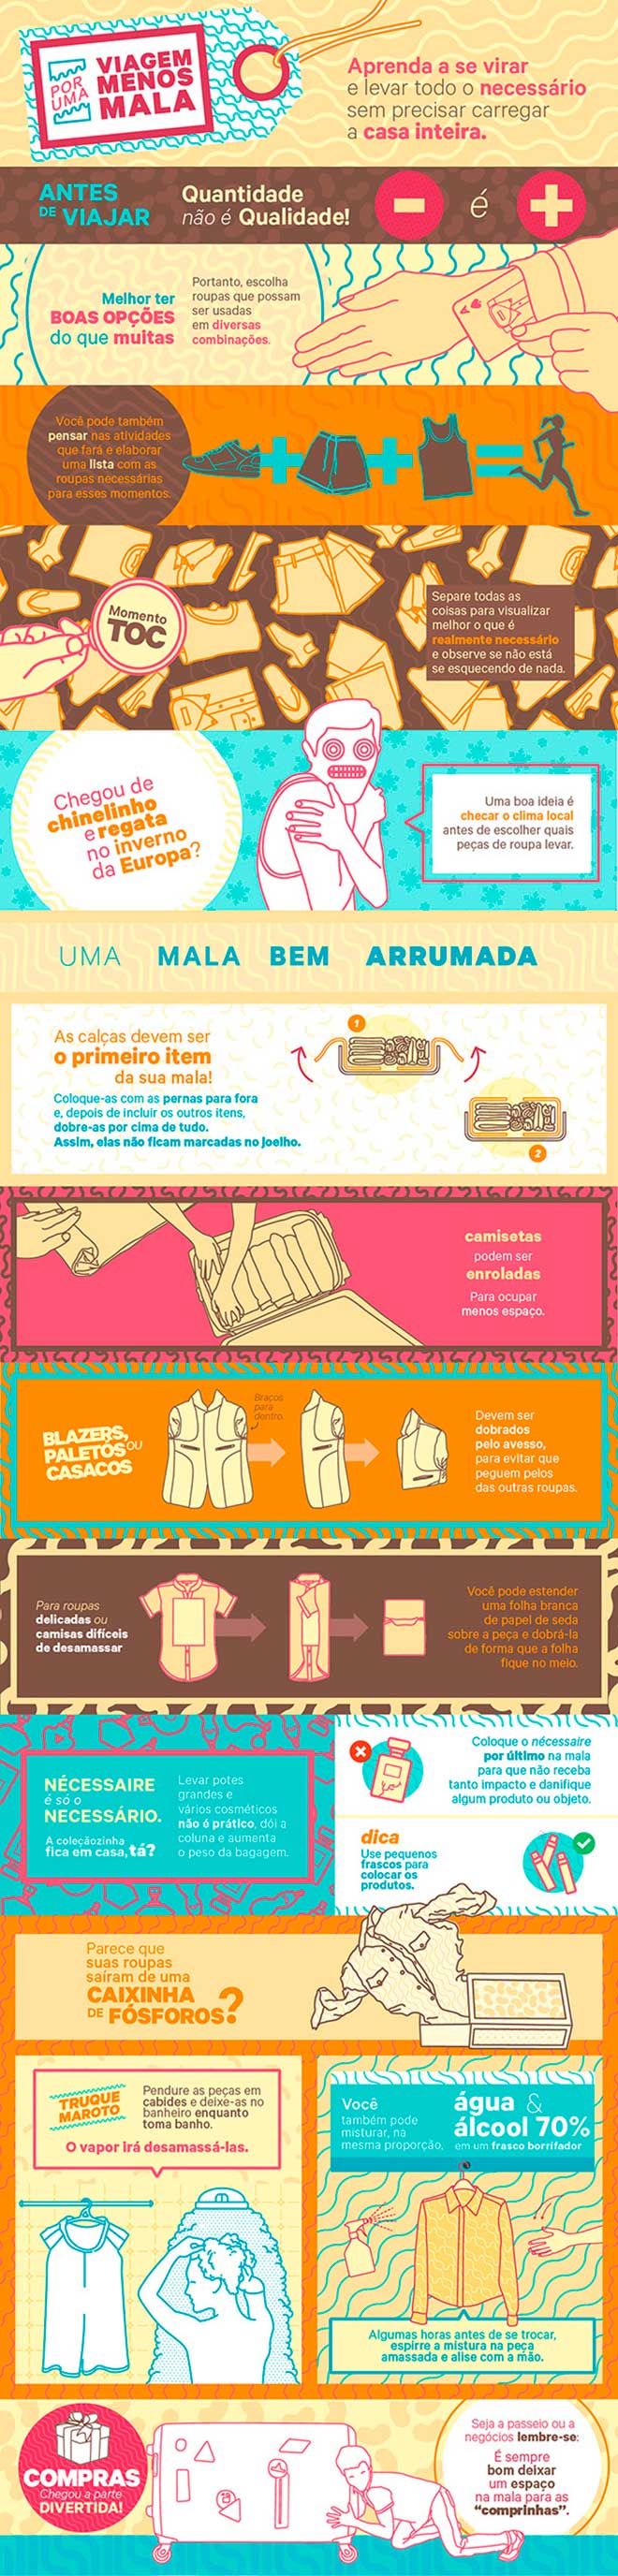 Como arrumar uma mala de viagem - Infográfico Accor